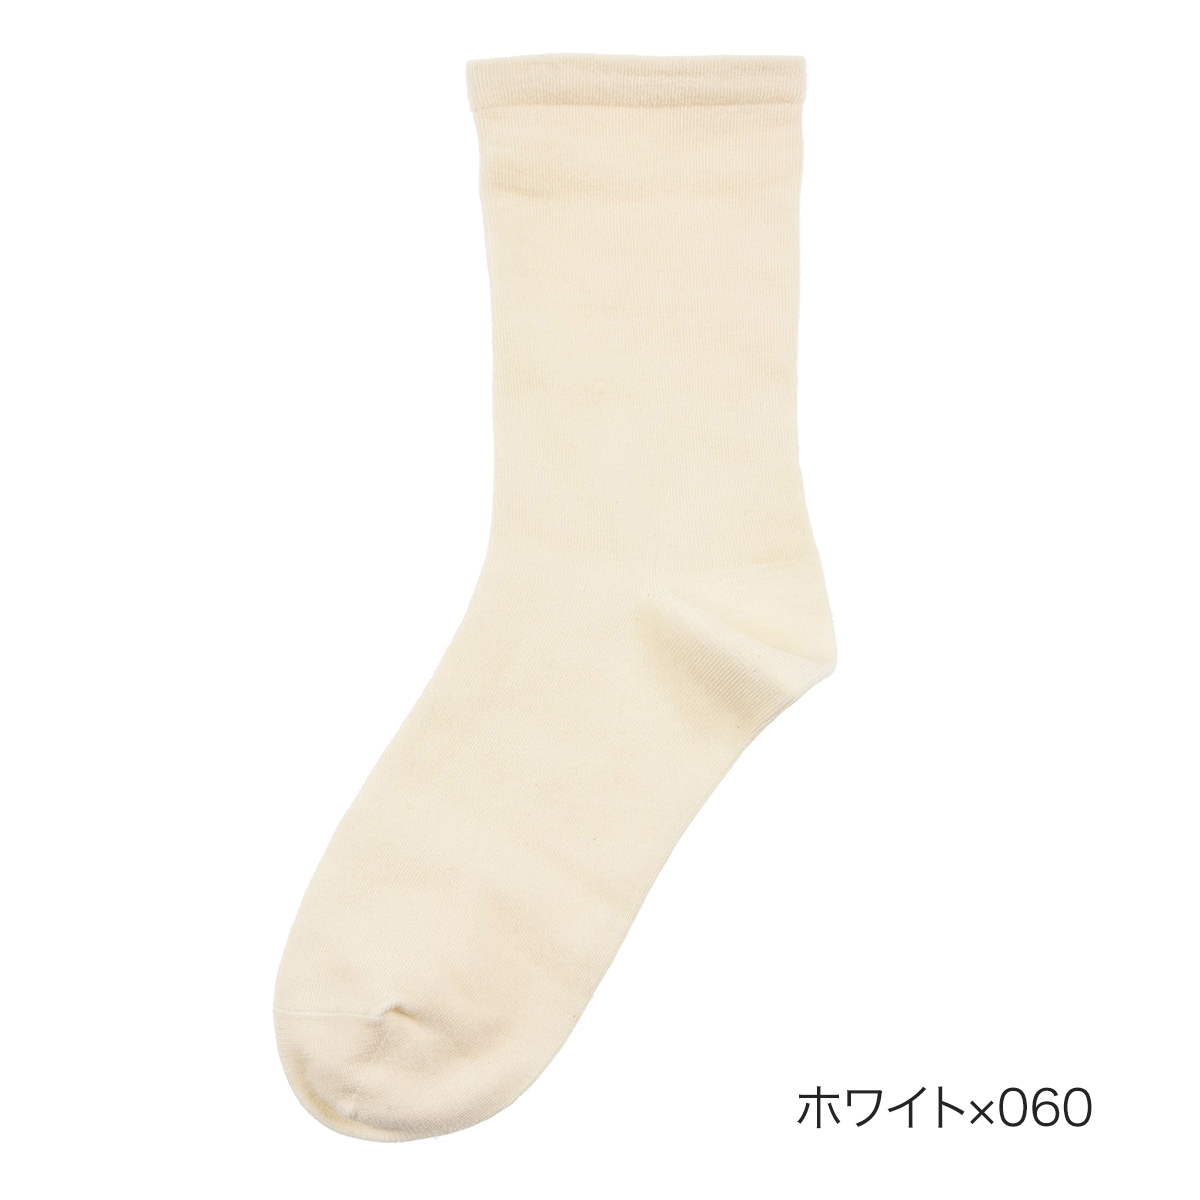 fukuske FUN(フクスケファン) ： comfortable socks 無地 ソックス ク...